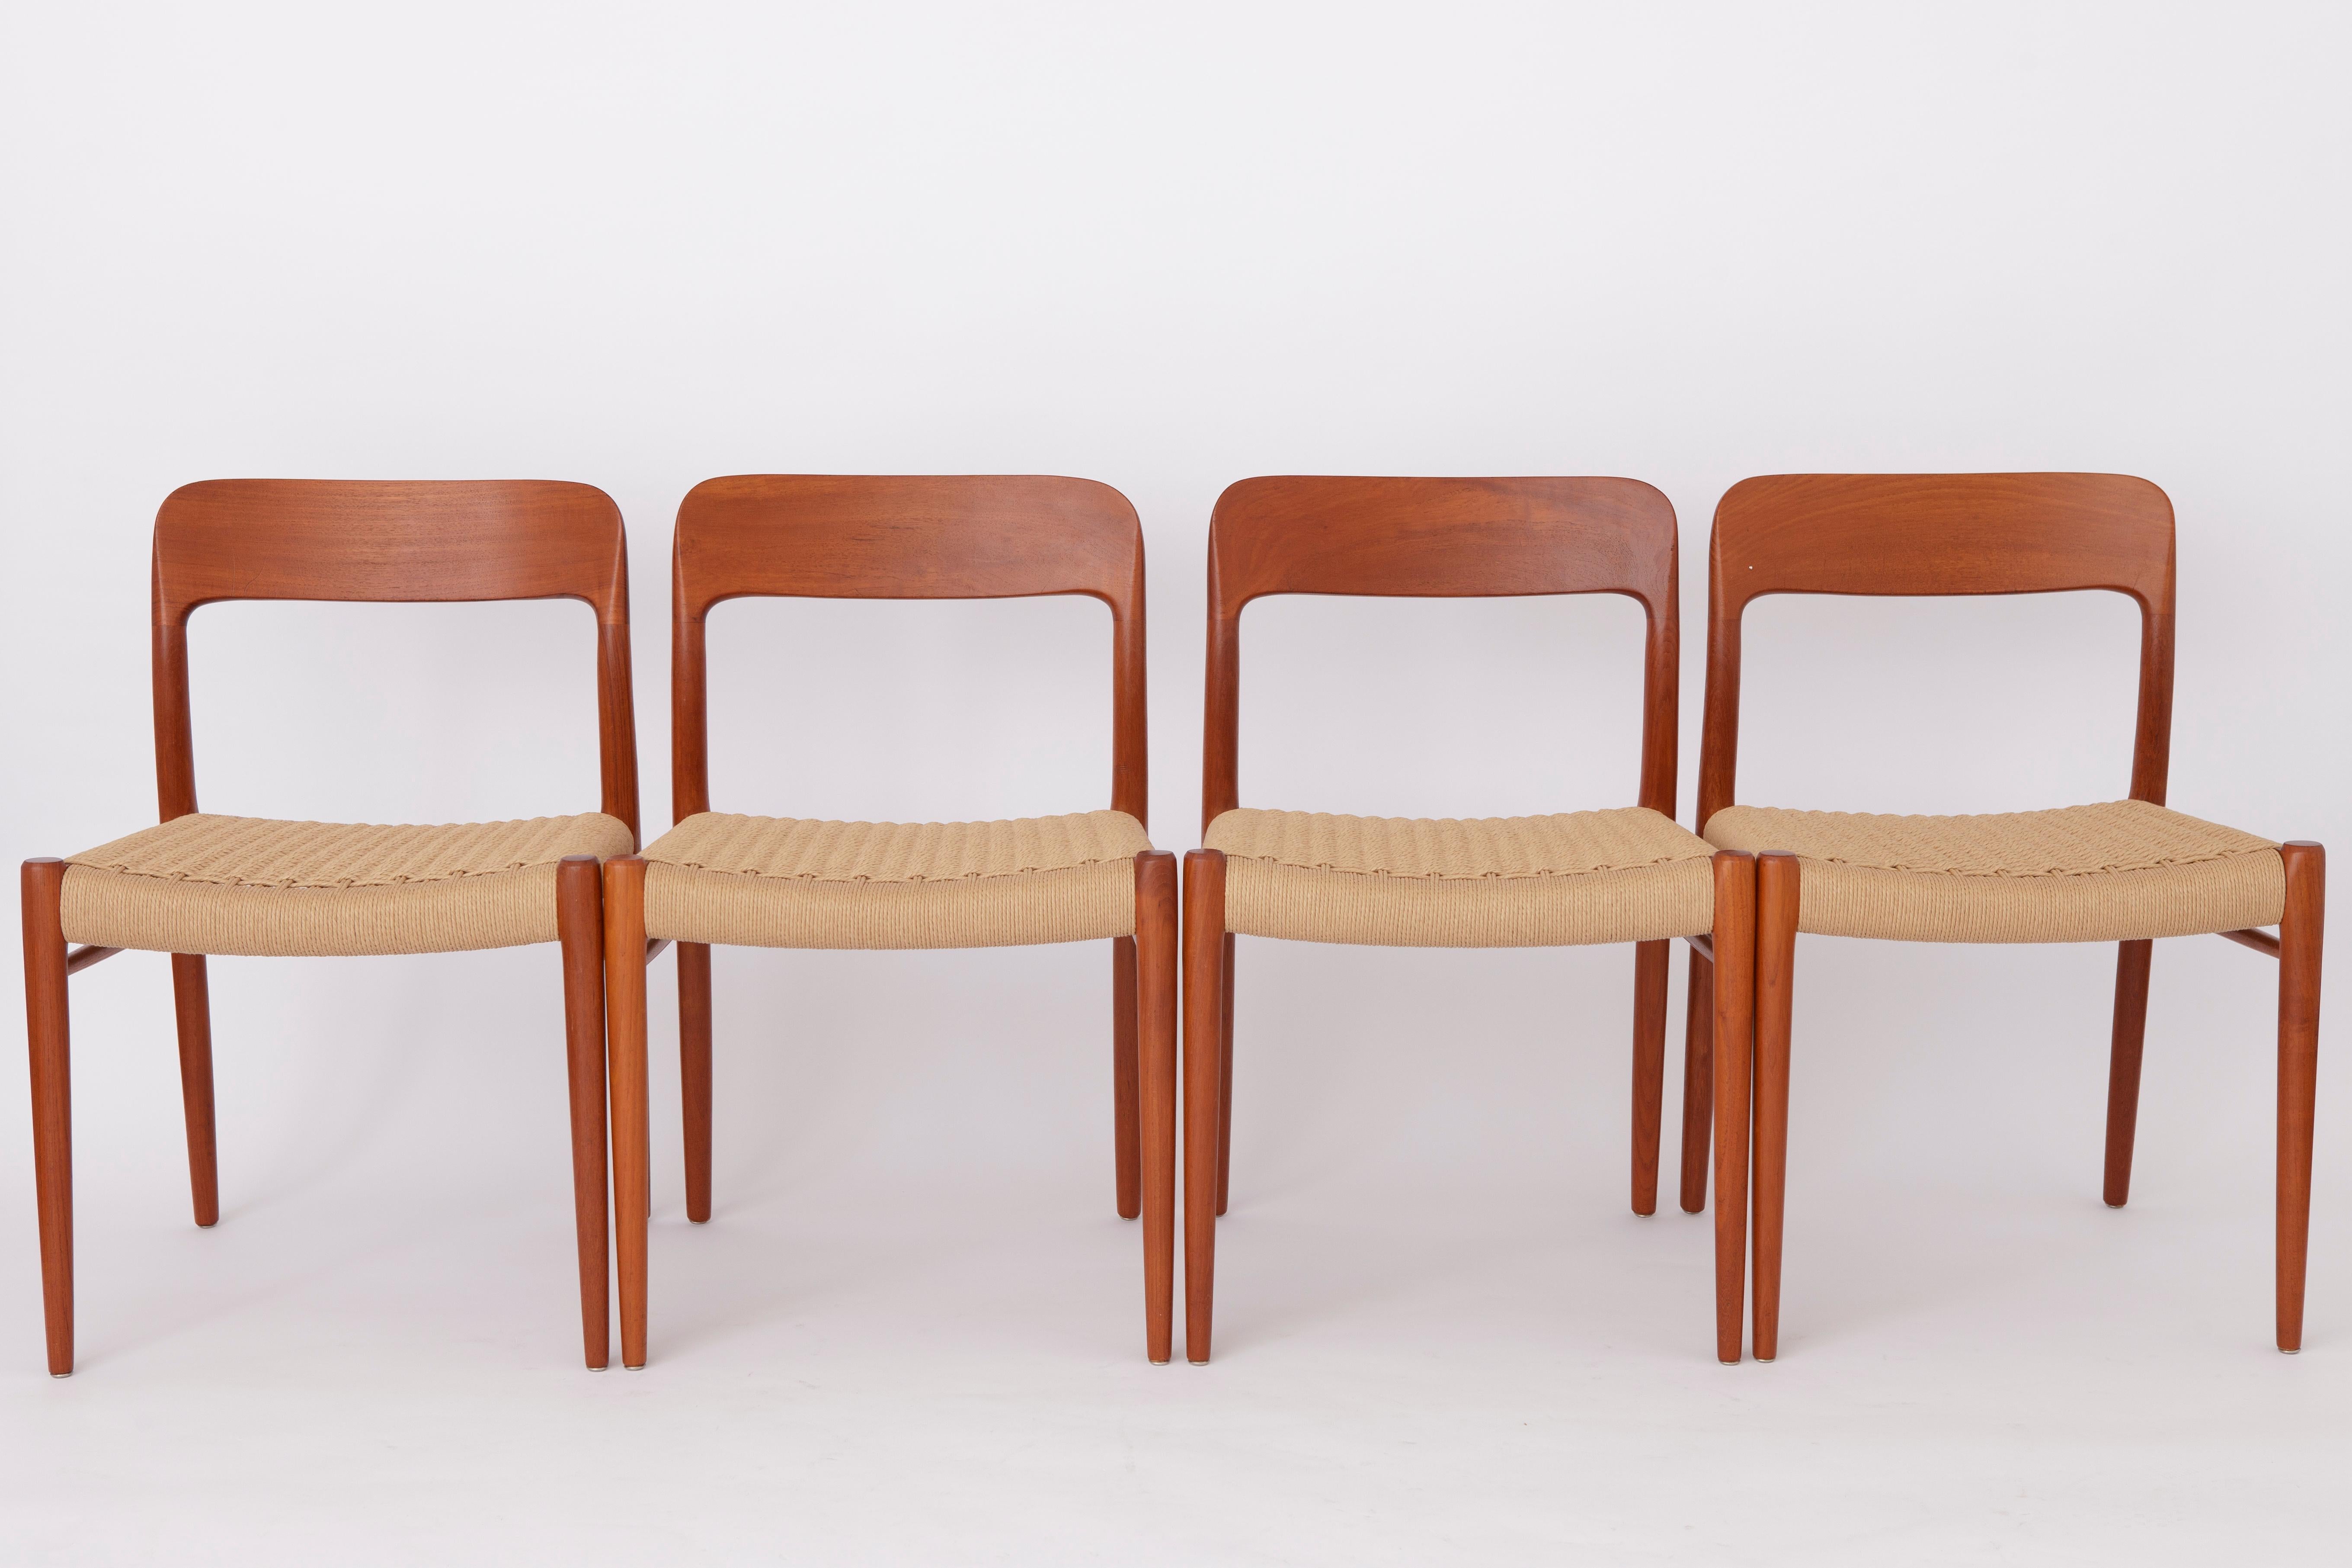 Satz von 4 Stühlen von Niels Otto Moller, Modell 75. Entworfen im Jahr 1954. 

Das meistgesuchte Stuhlmodell der Moller-Reihe :-)
Einzigartiges, klassisches, dänisches Design aus den 1950er Jahren. 
Neben dem Modell 71, einem der absolut